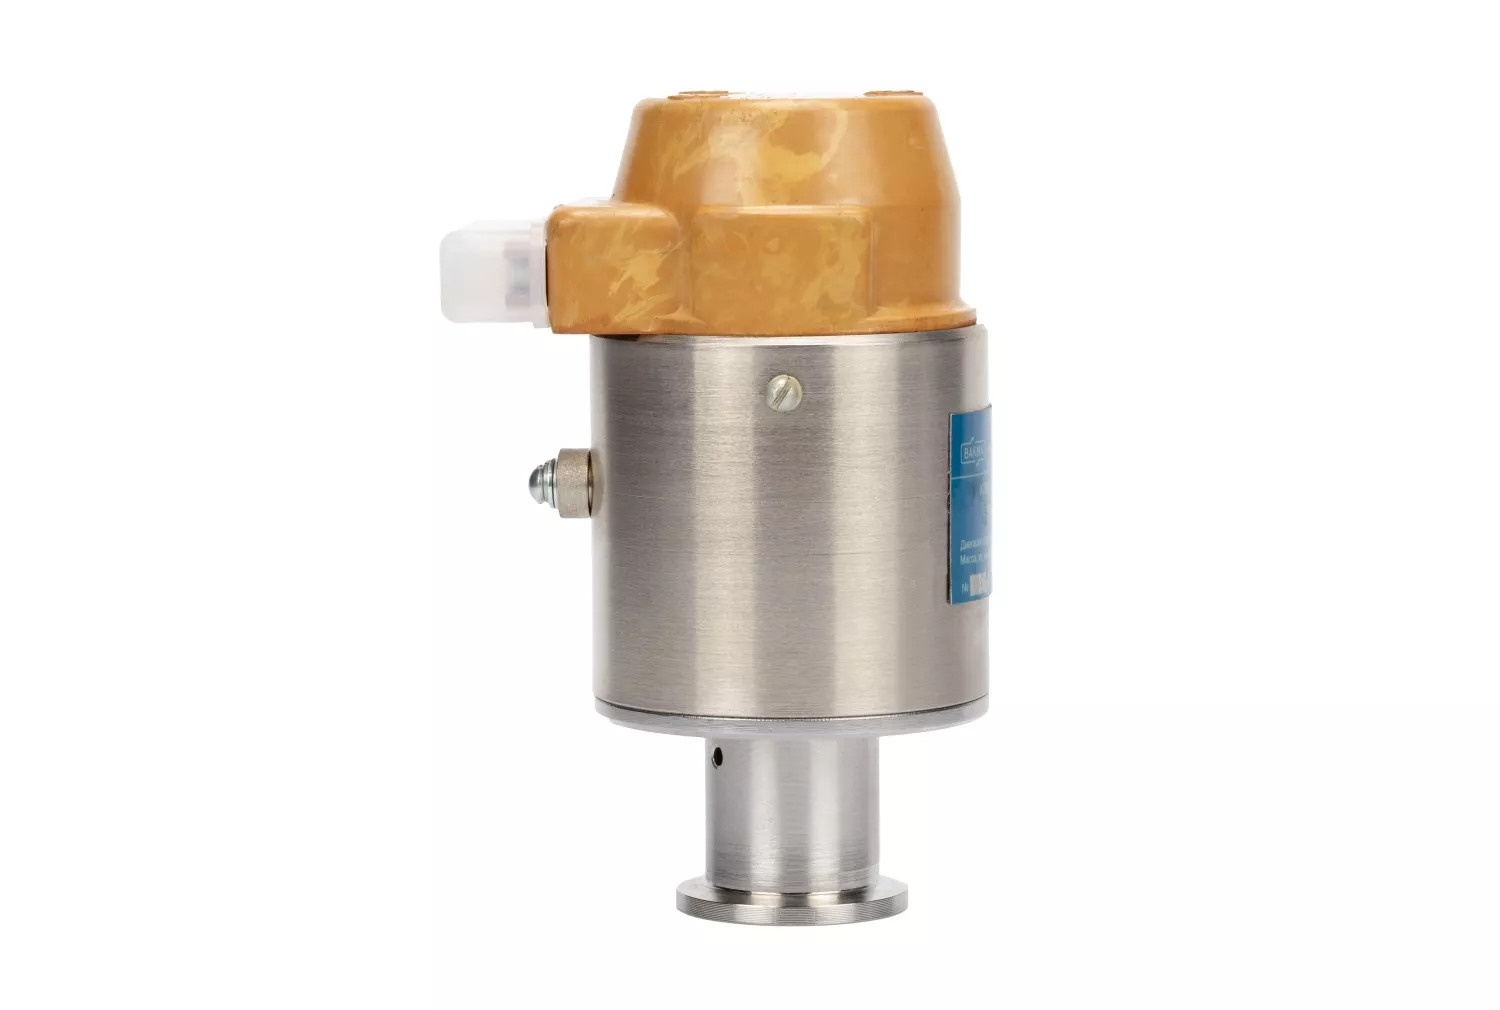 Купить в АО Вакууммаш ✓ Напускной вакуумный клапан 3КН-2,5 (нормально-открытый) ✦ узнать цены и отзывы в каталоге